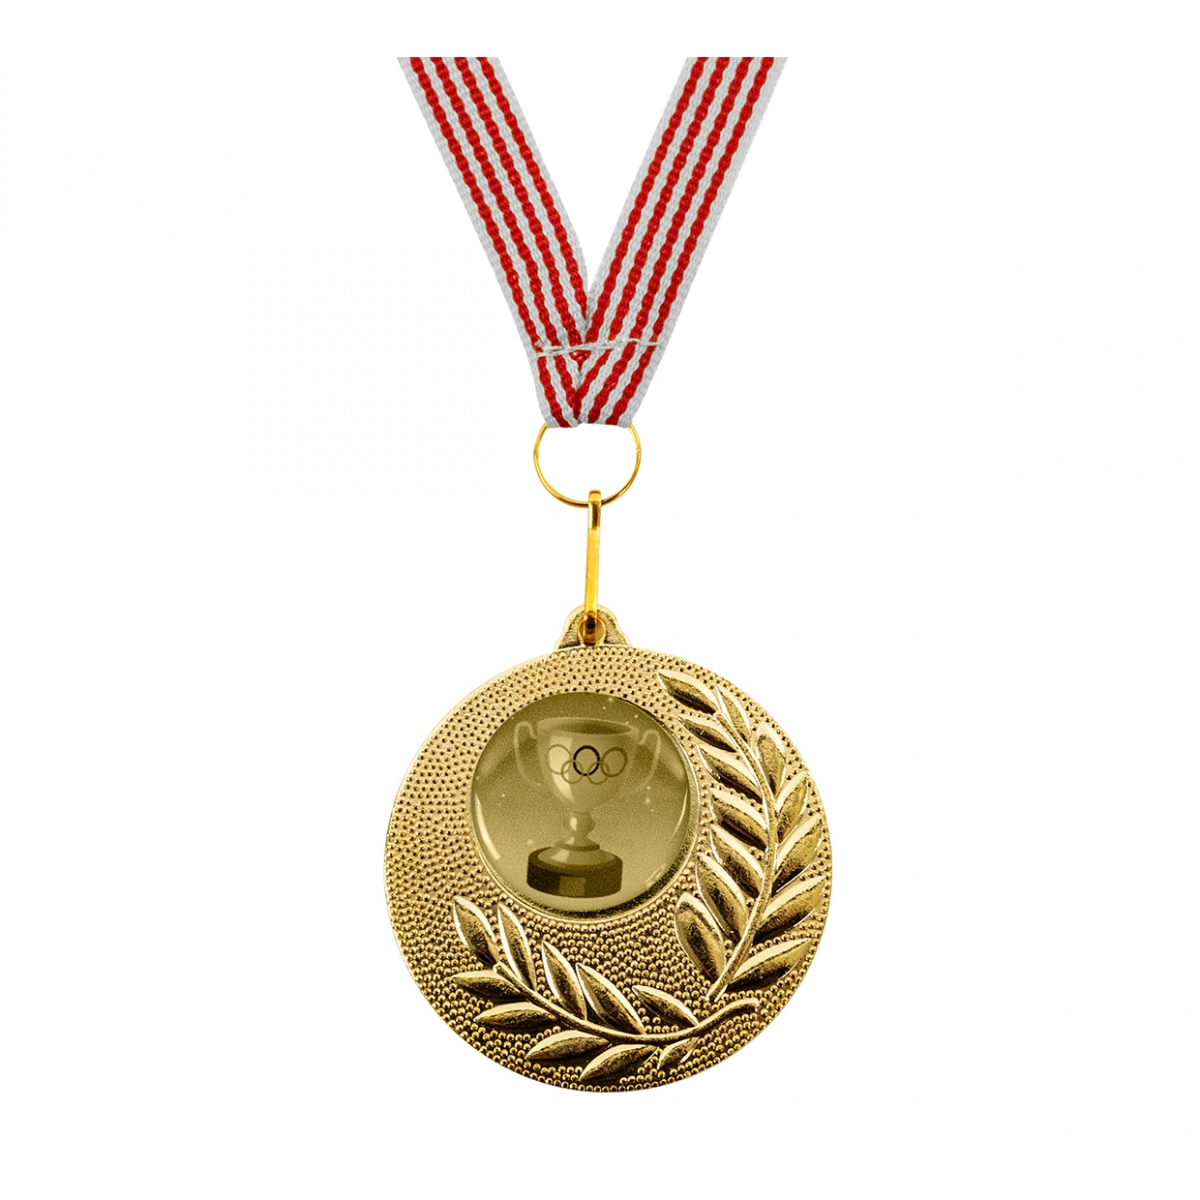 Imagen en la que se ve una medalla de oro